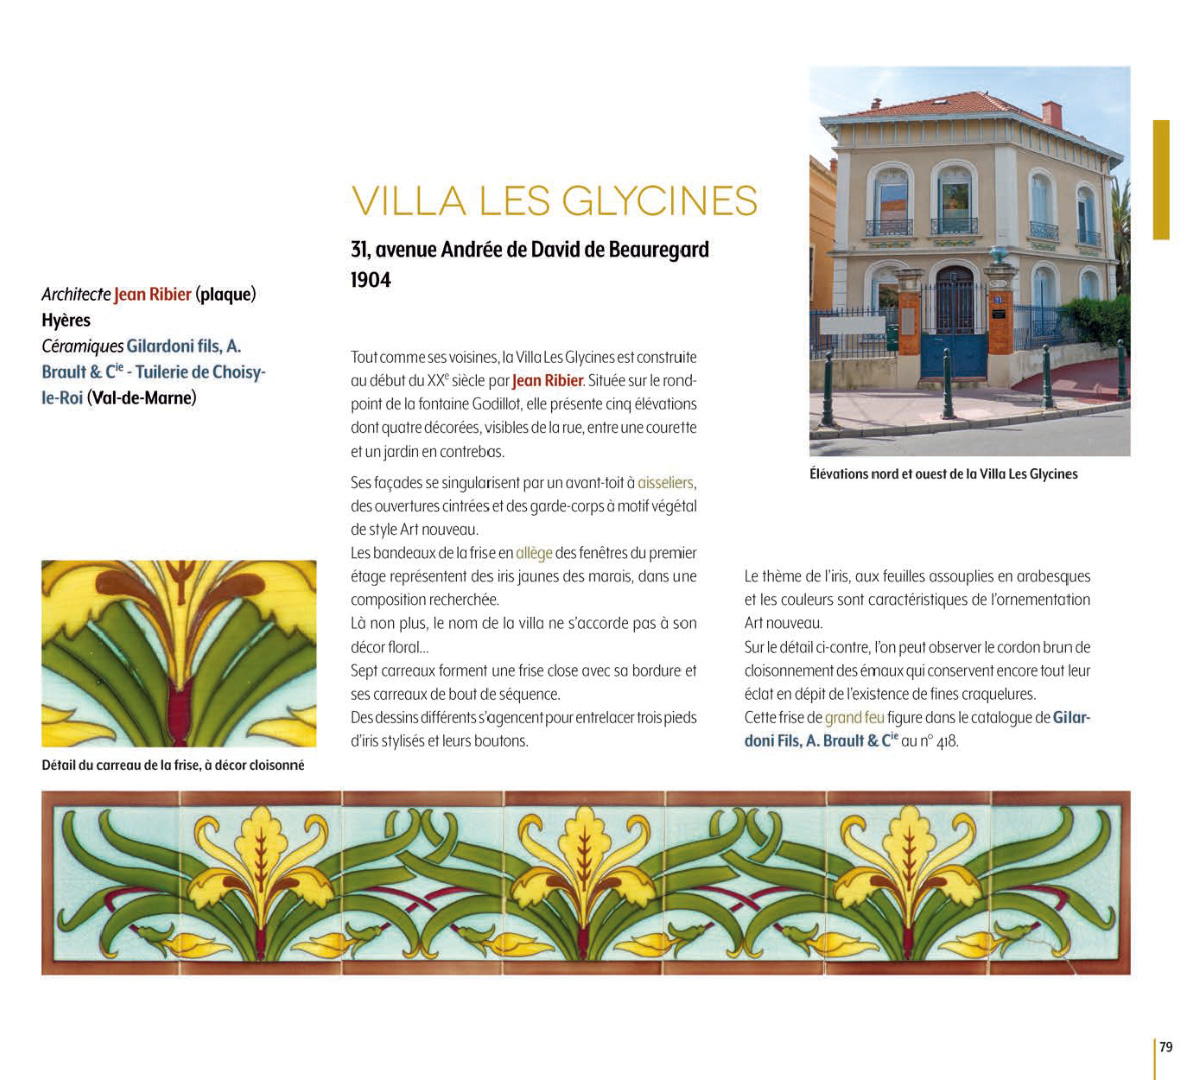 Villa Les Glycines, Hyères, architecte Jean Ribier, céramiques Gilardoni fils A. Brault & Cie